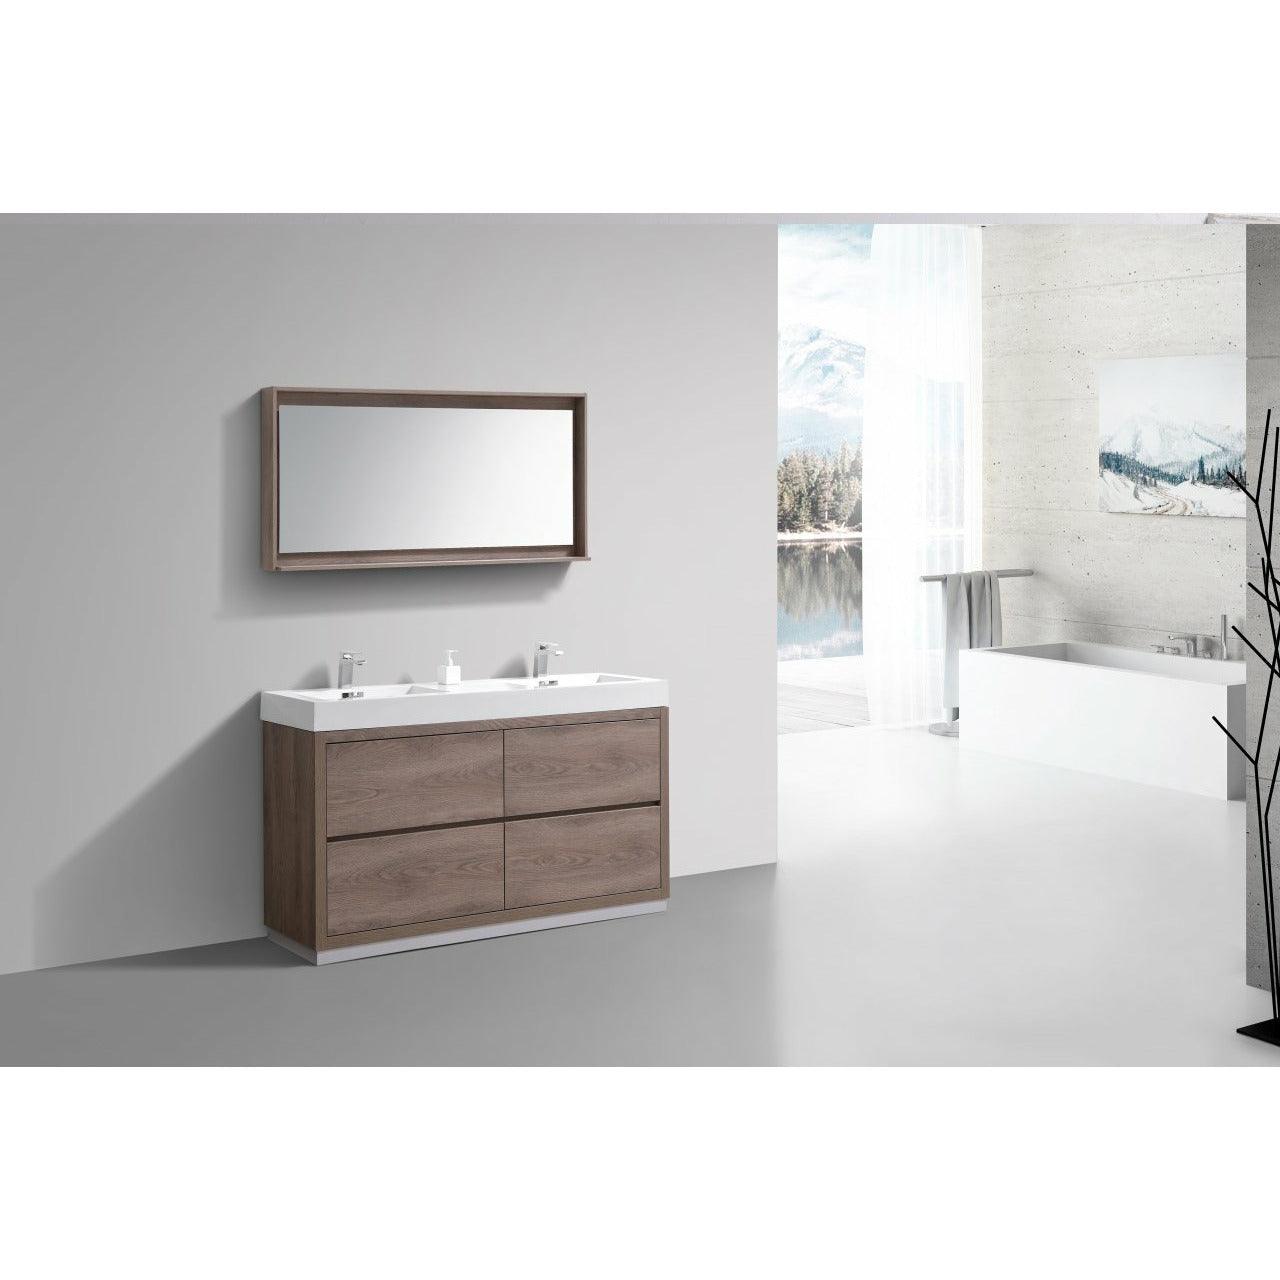 
  
  KubeBath Bliss Double Free Standing Modern Bathroom Vanity
  
